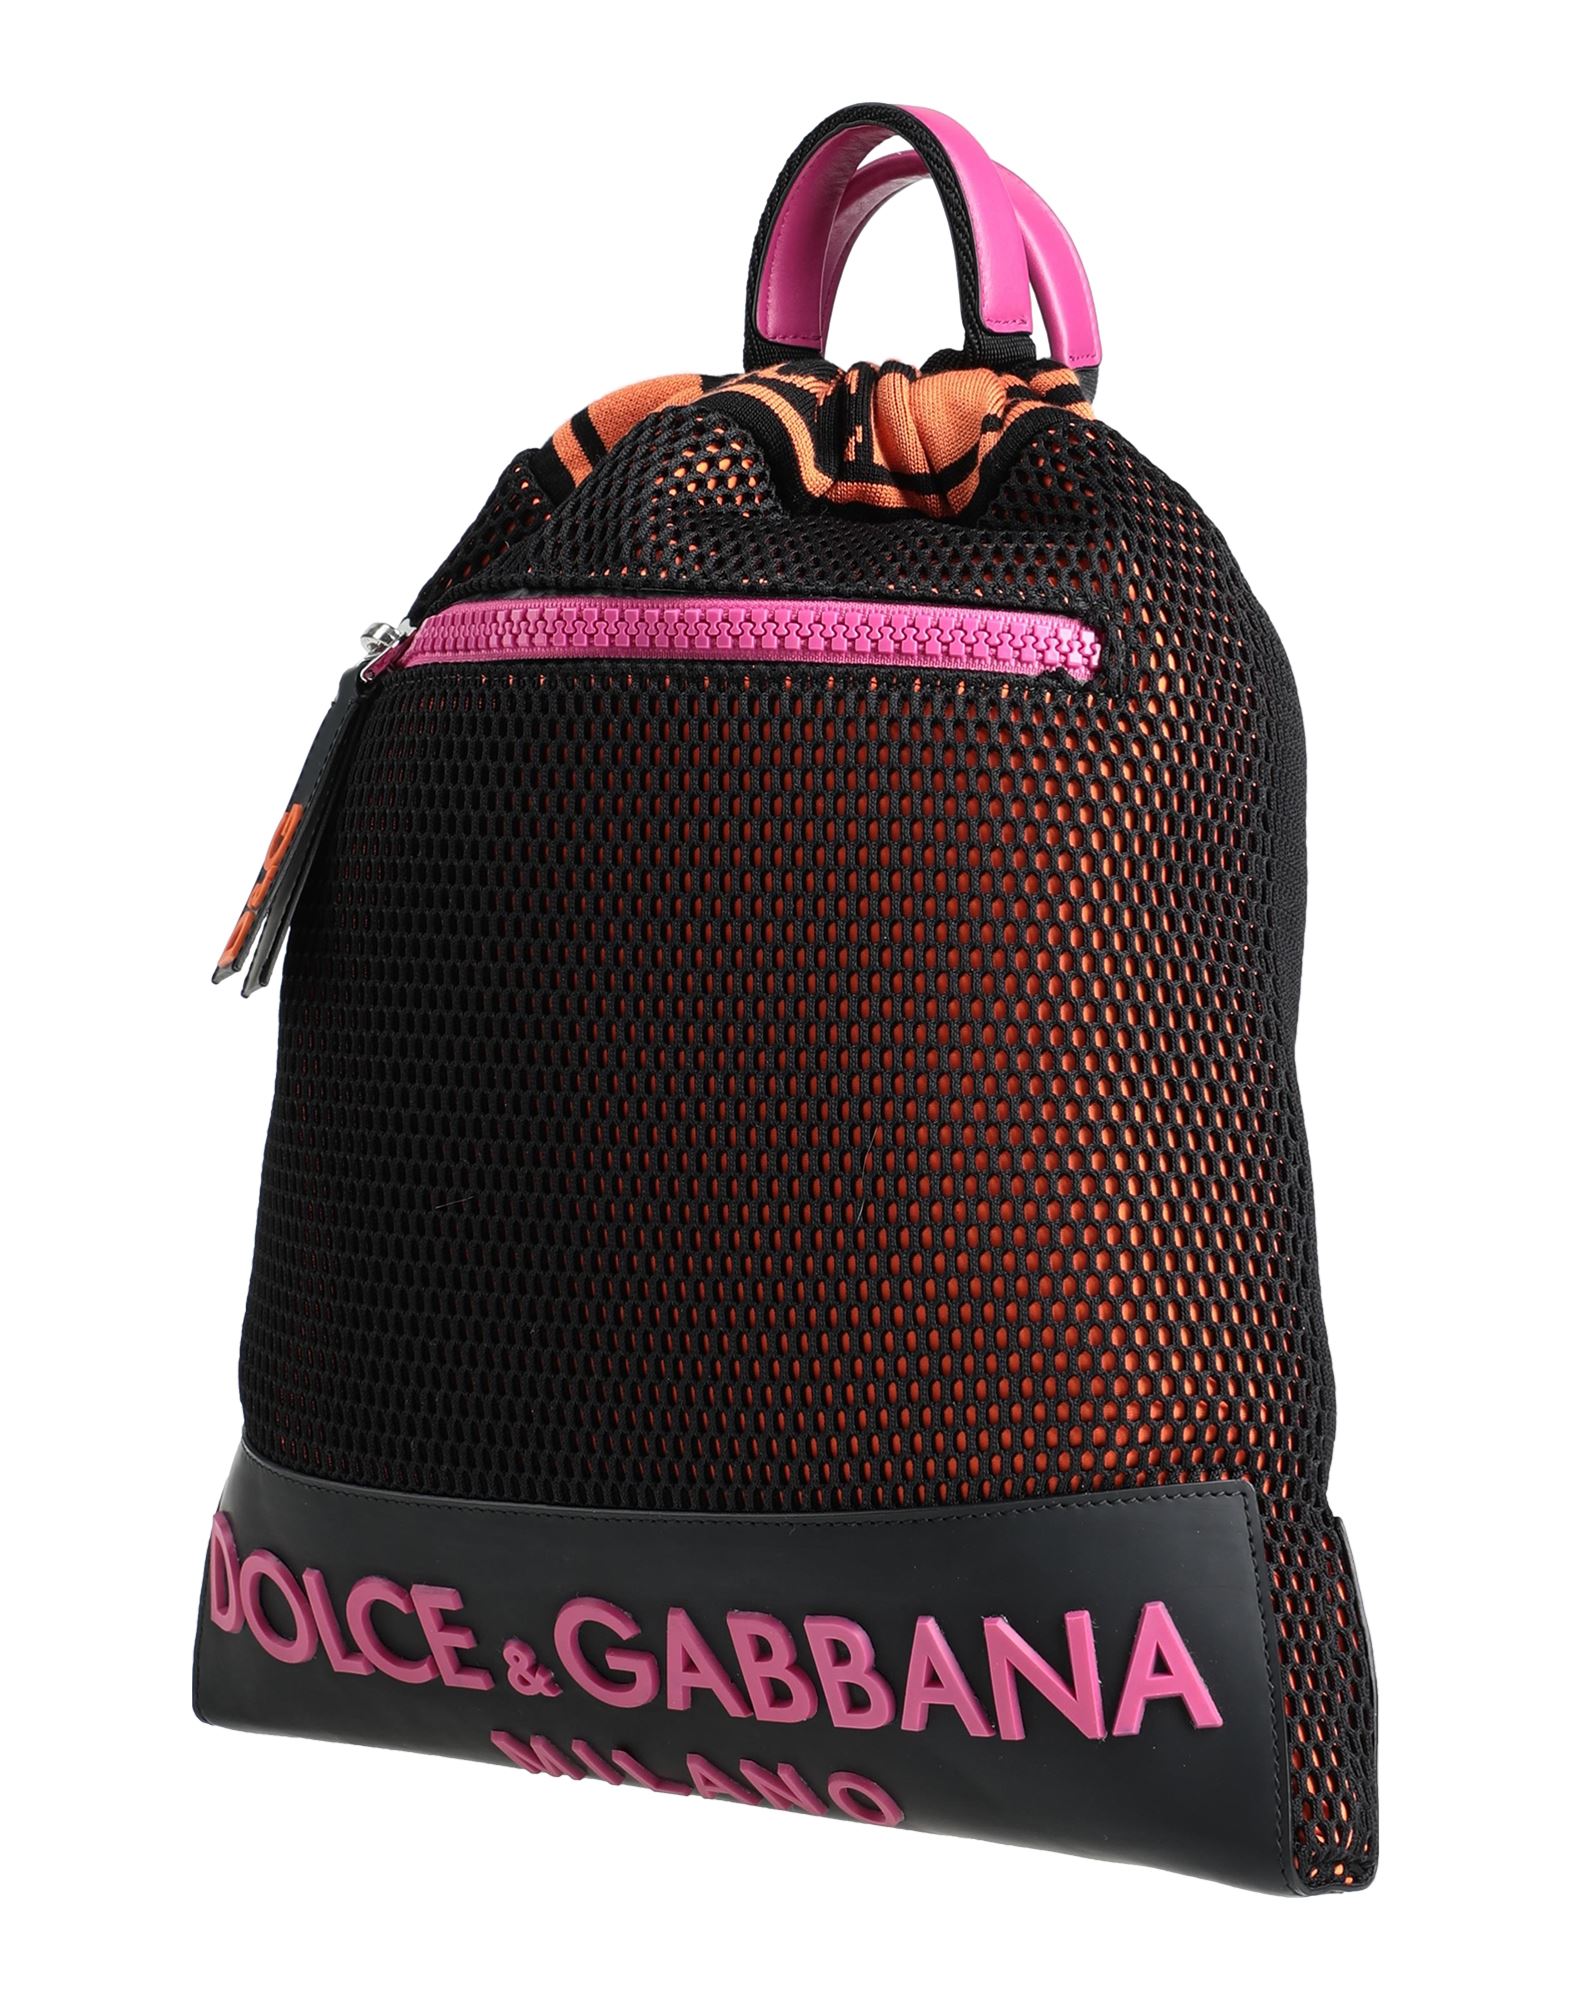 Dolce & Gabbana Backpacks In Black | ModeSens